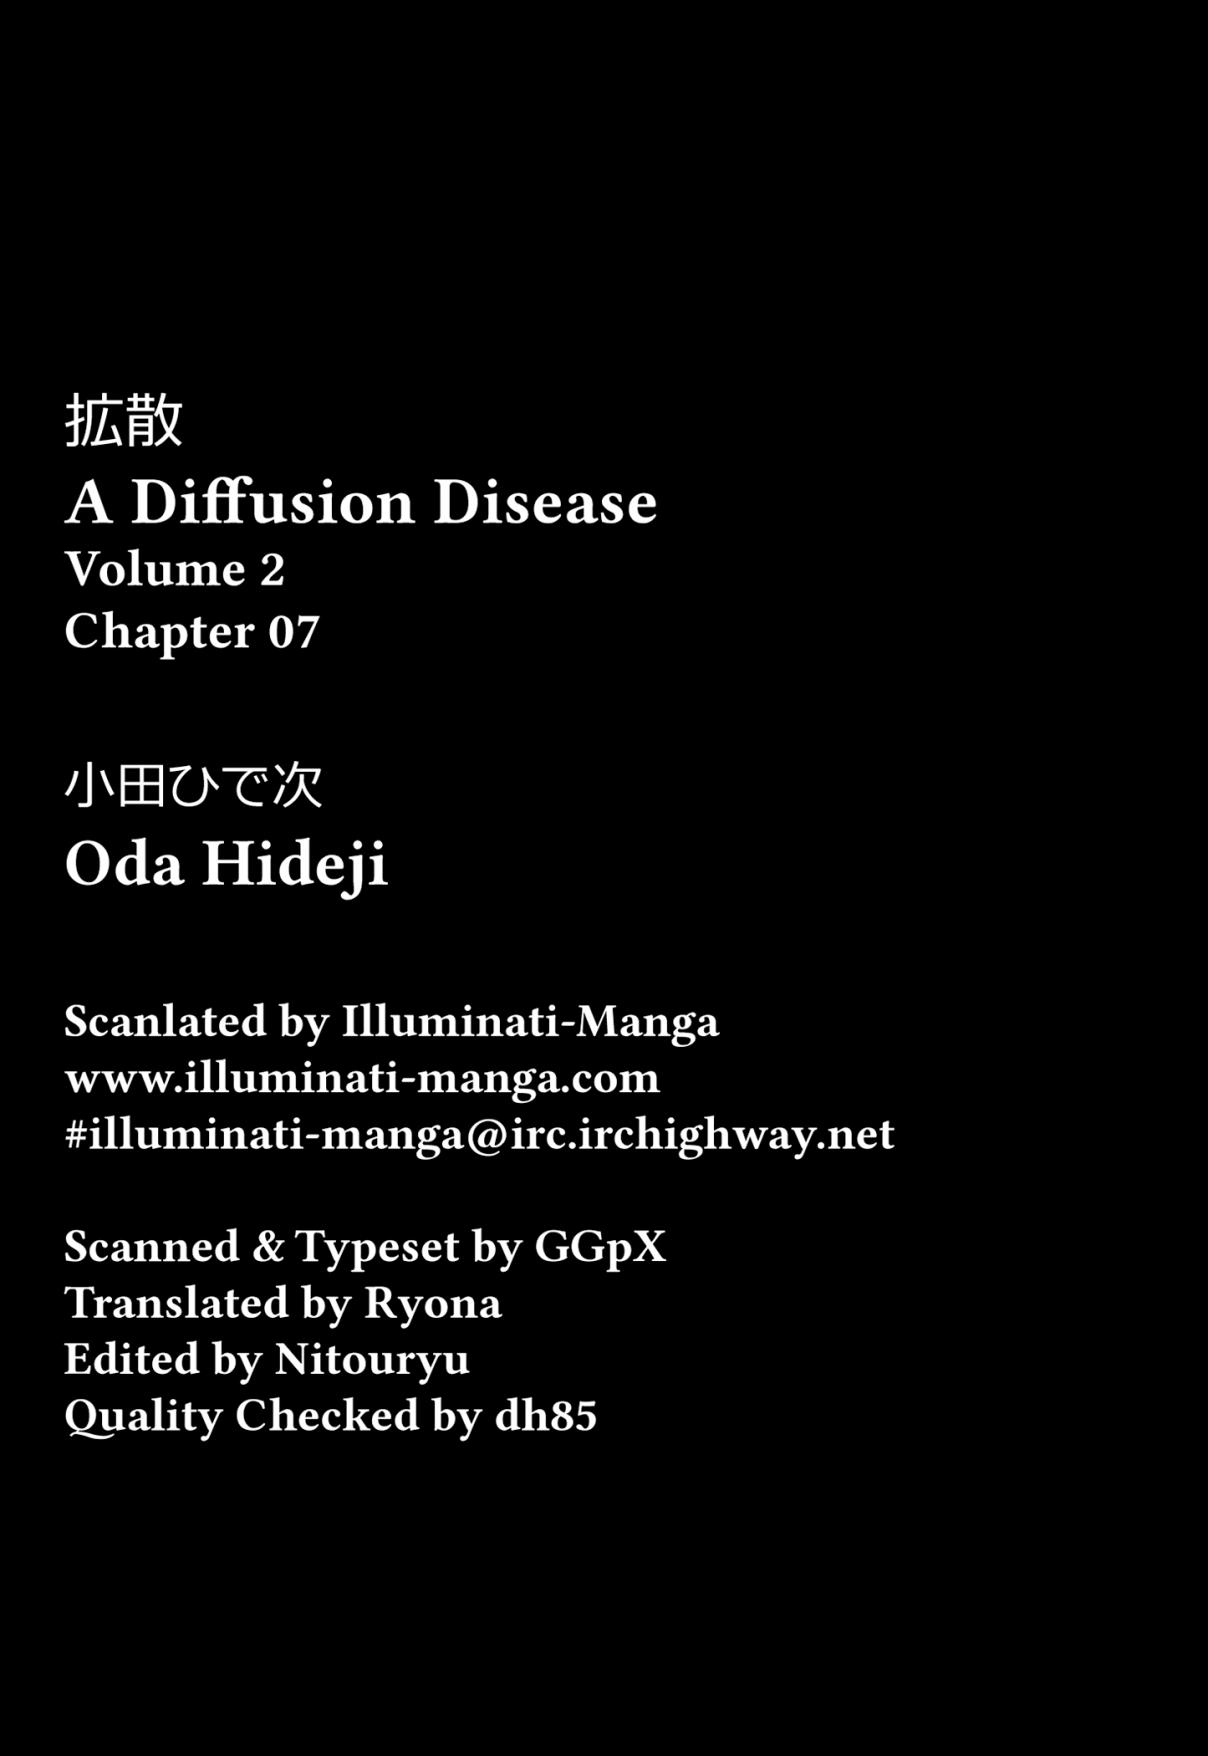 A Diffusion Disease Vol. 2 Ch. 7 A Ten Year Promise